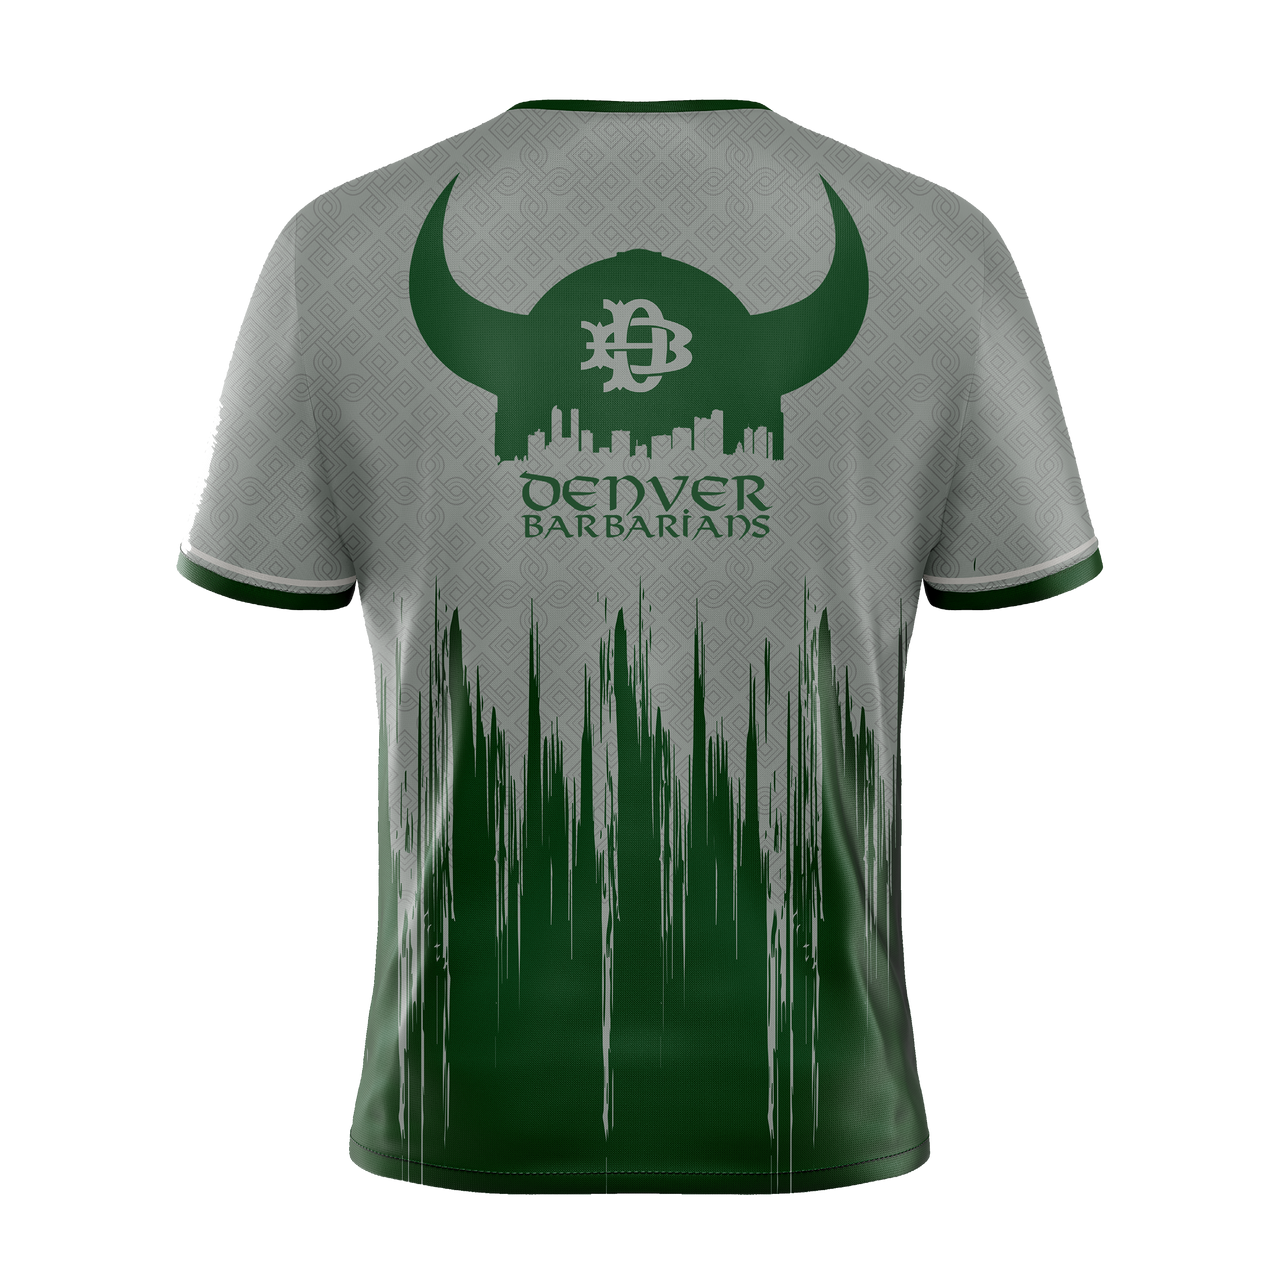 Camiseta de entrenamiento de los Denver Barbarians